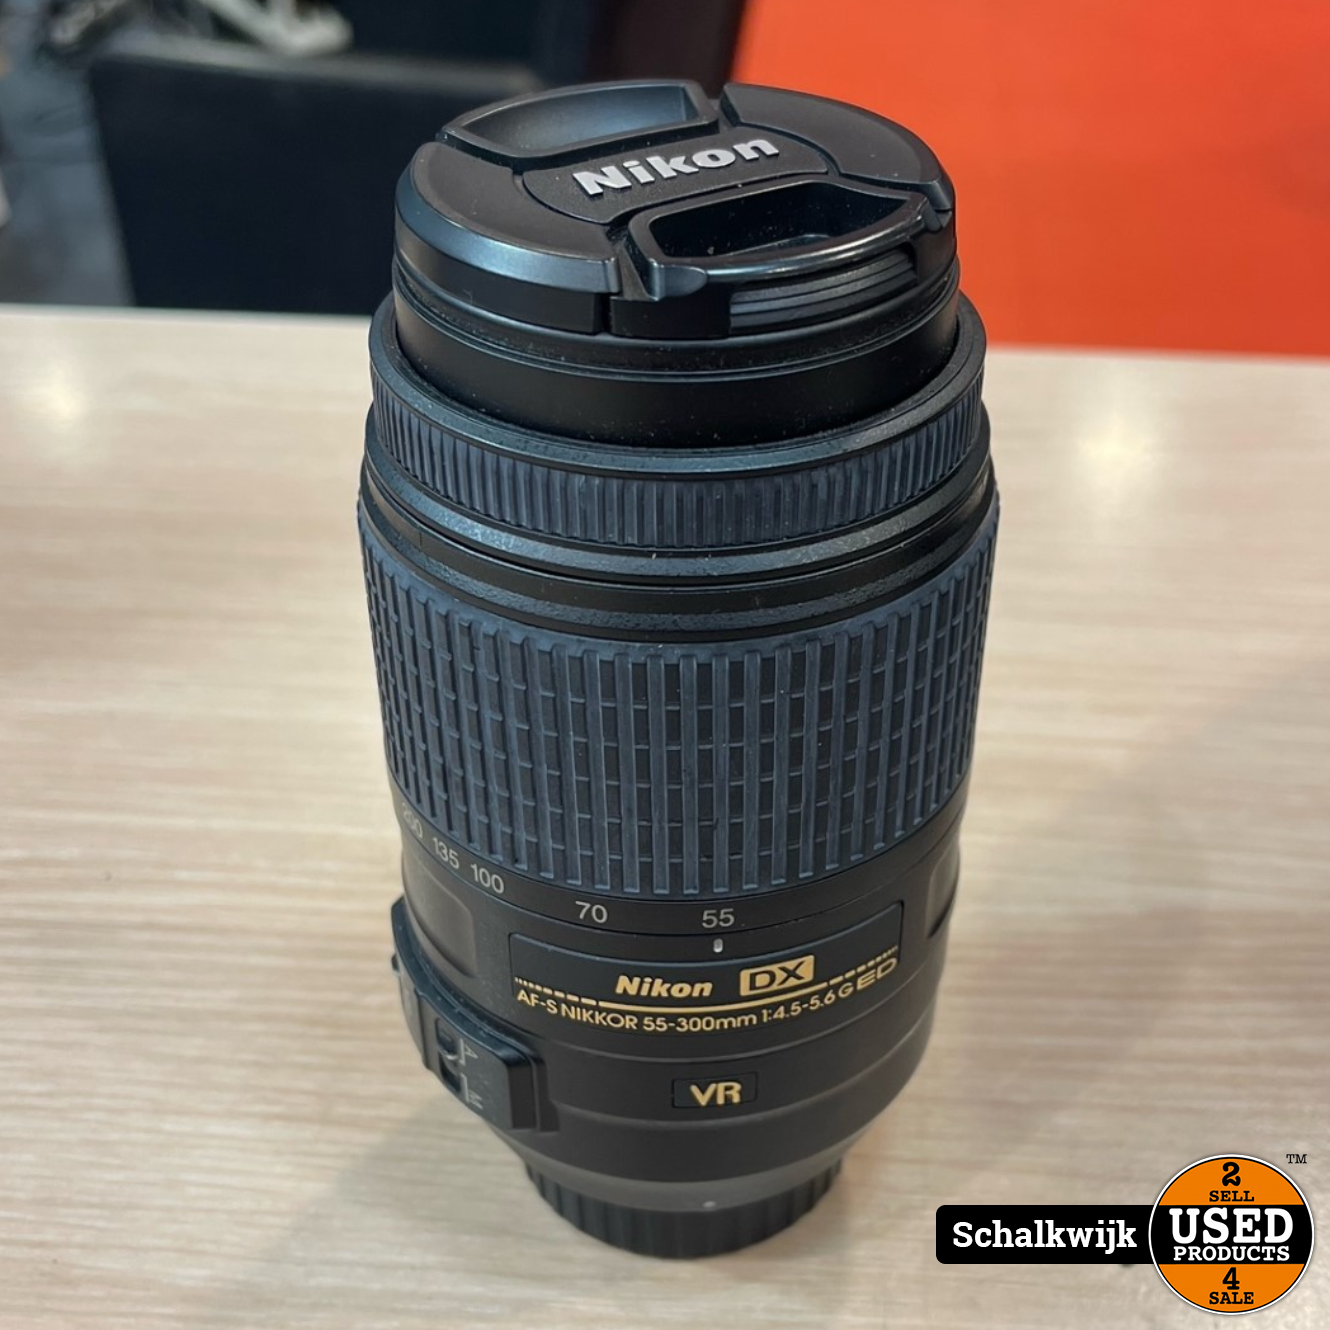 Nikon AF-S Nikkor DX 55-300Mm F4.5-5.6 G ED VR Lens in nette staat